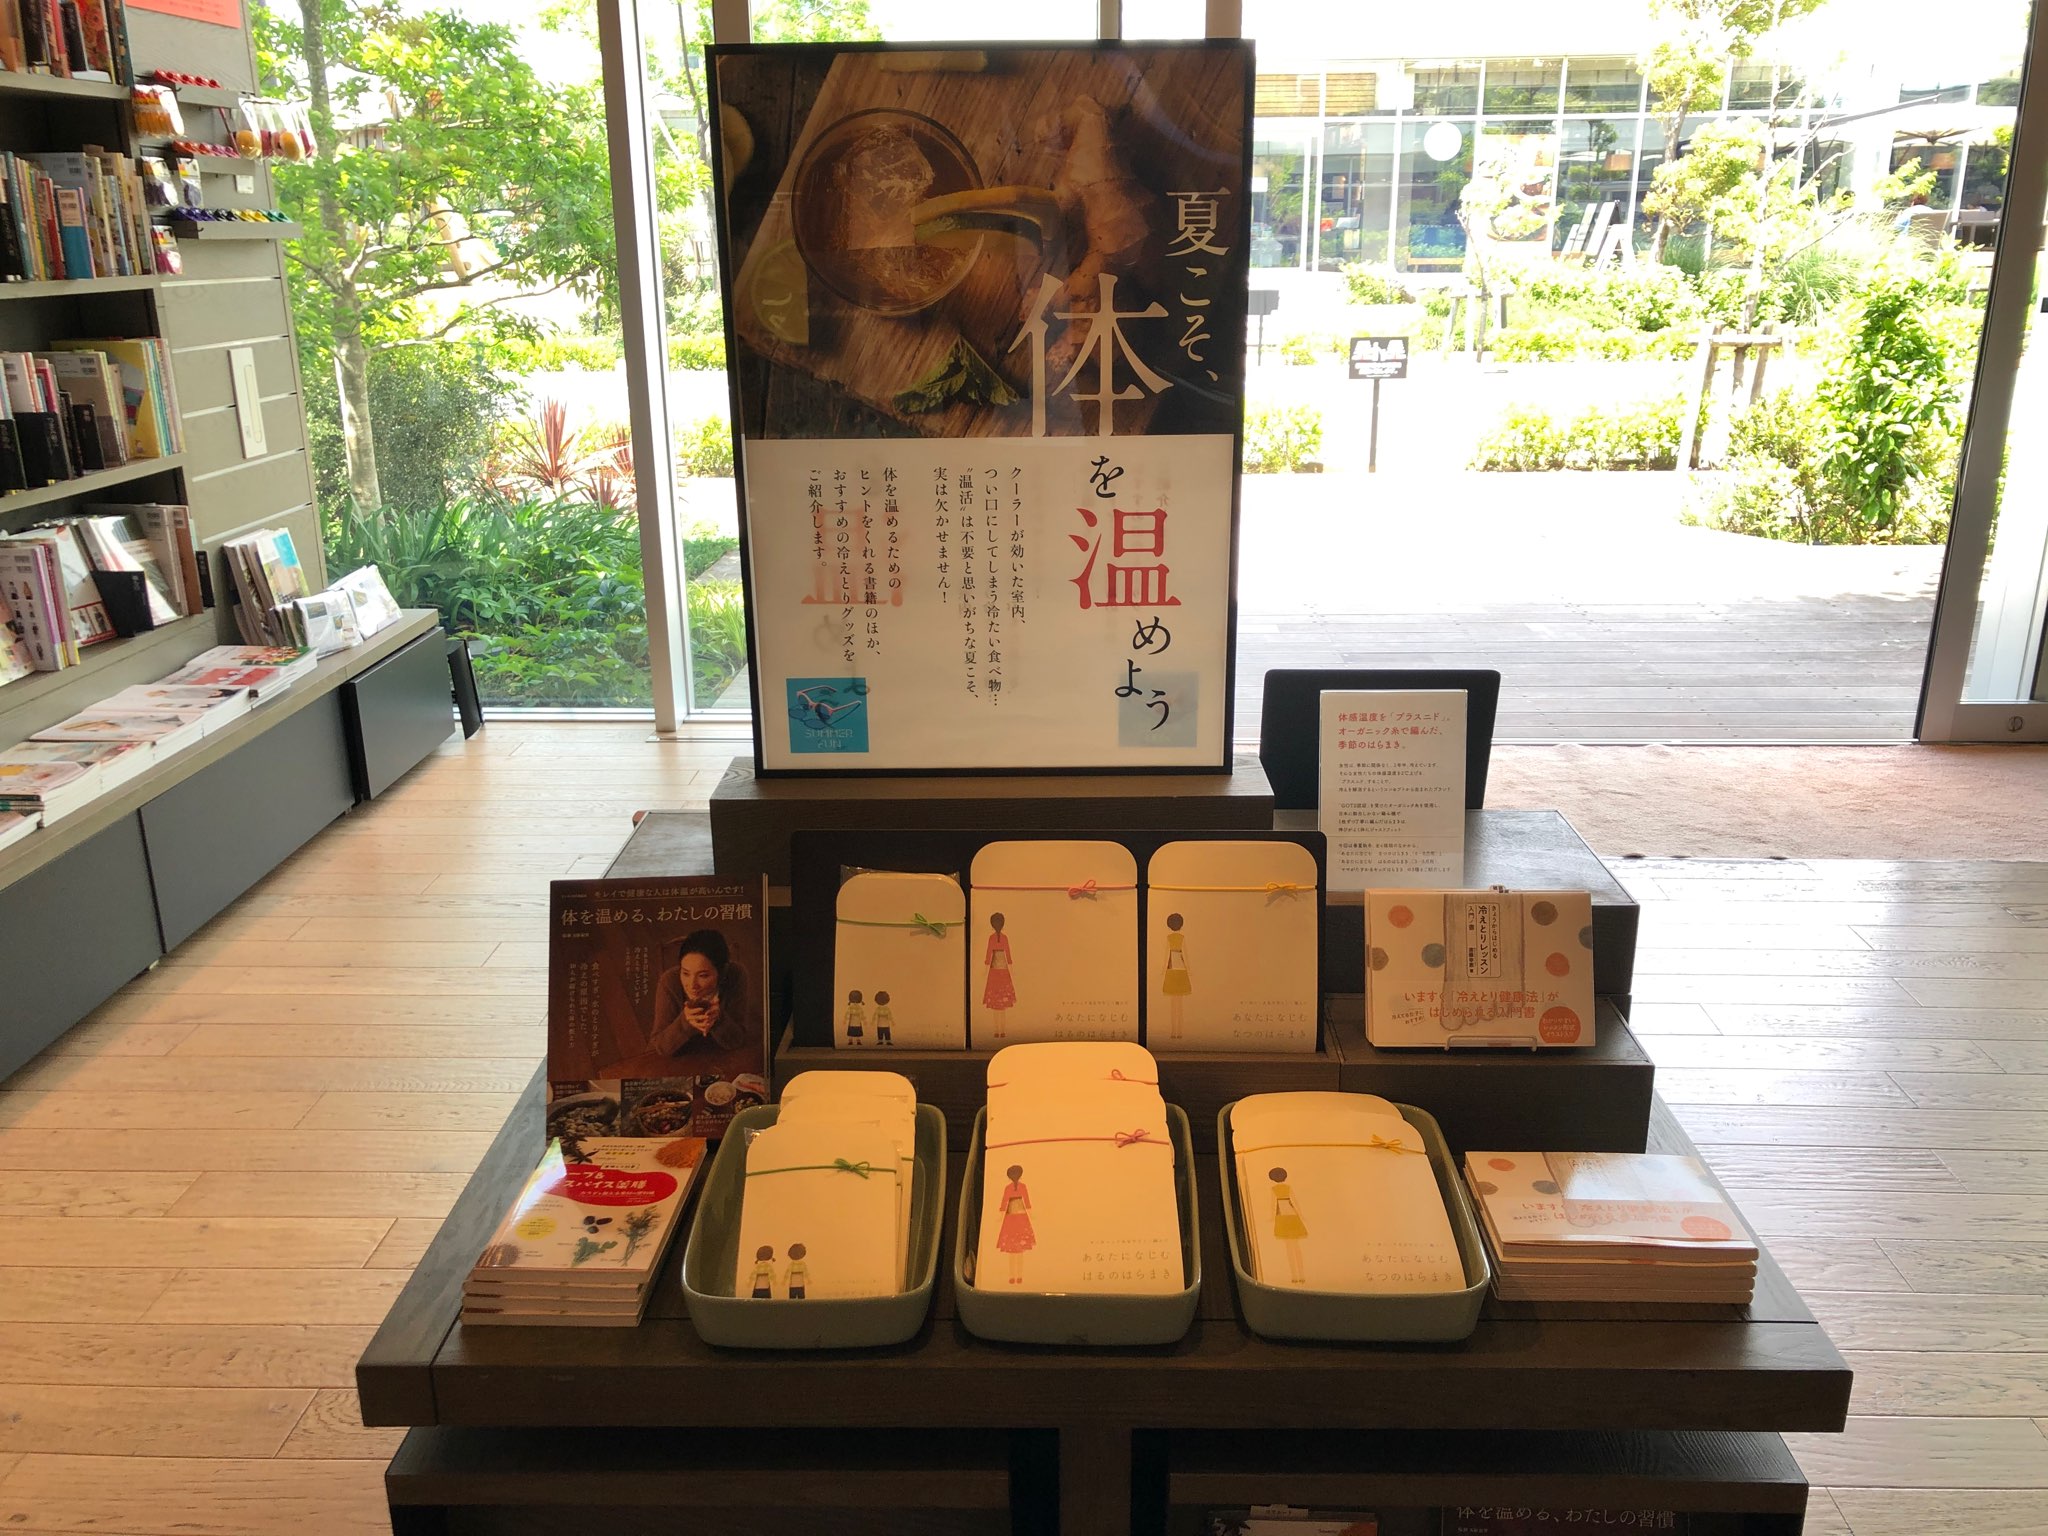 世界基準オーガニック糸の新製品「夏用はらまき」 湘南T-SITE蔦屋書店で先行販売